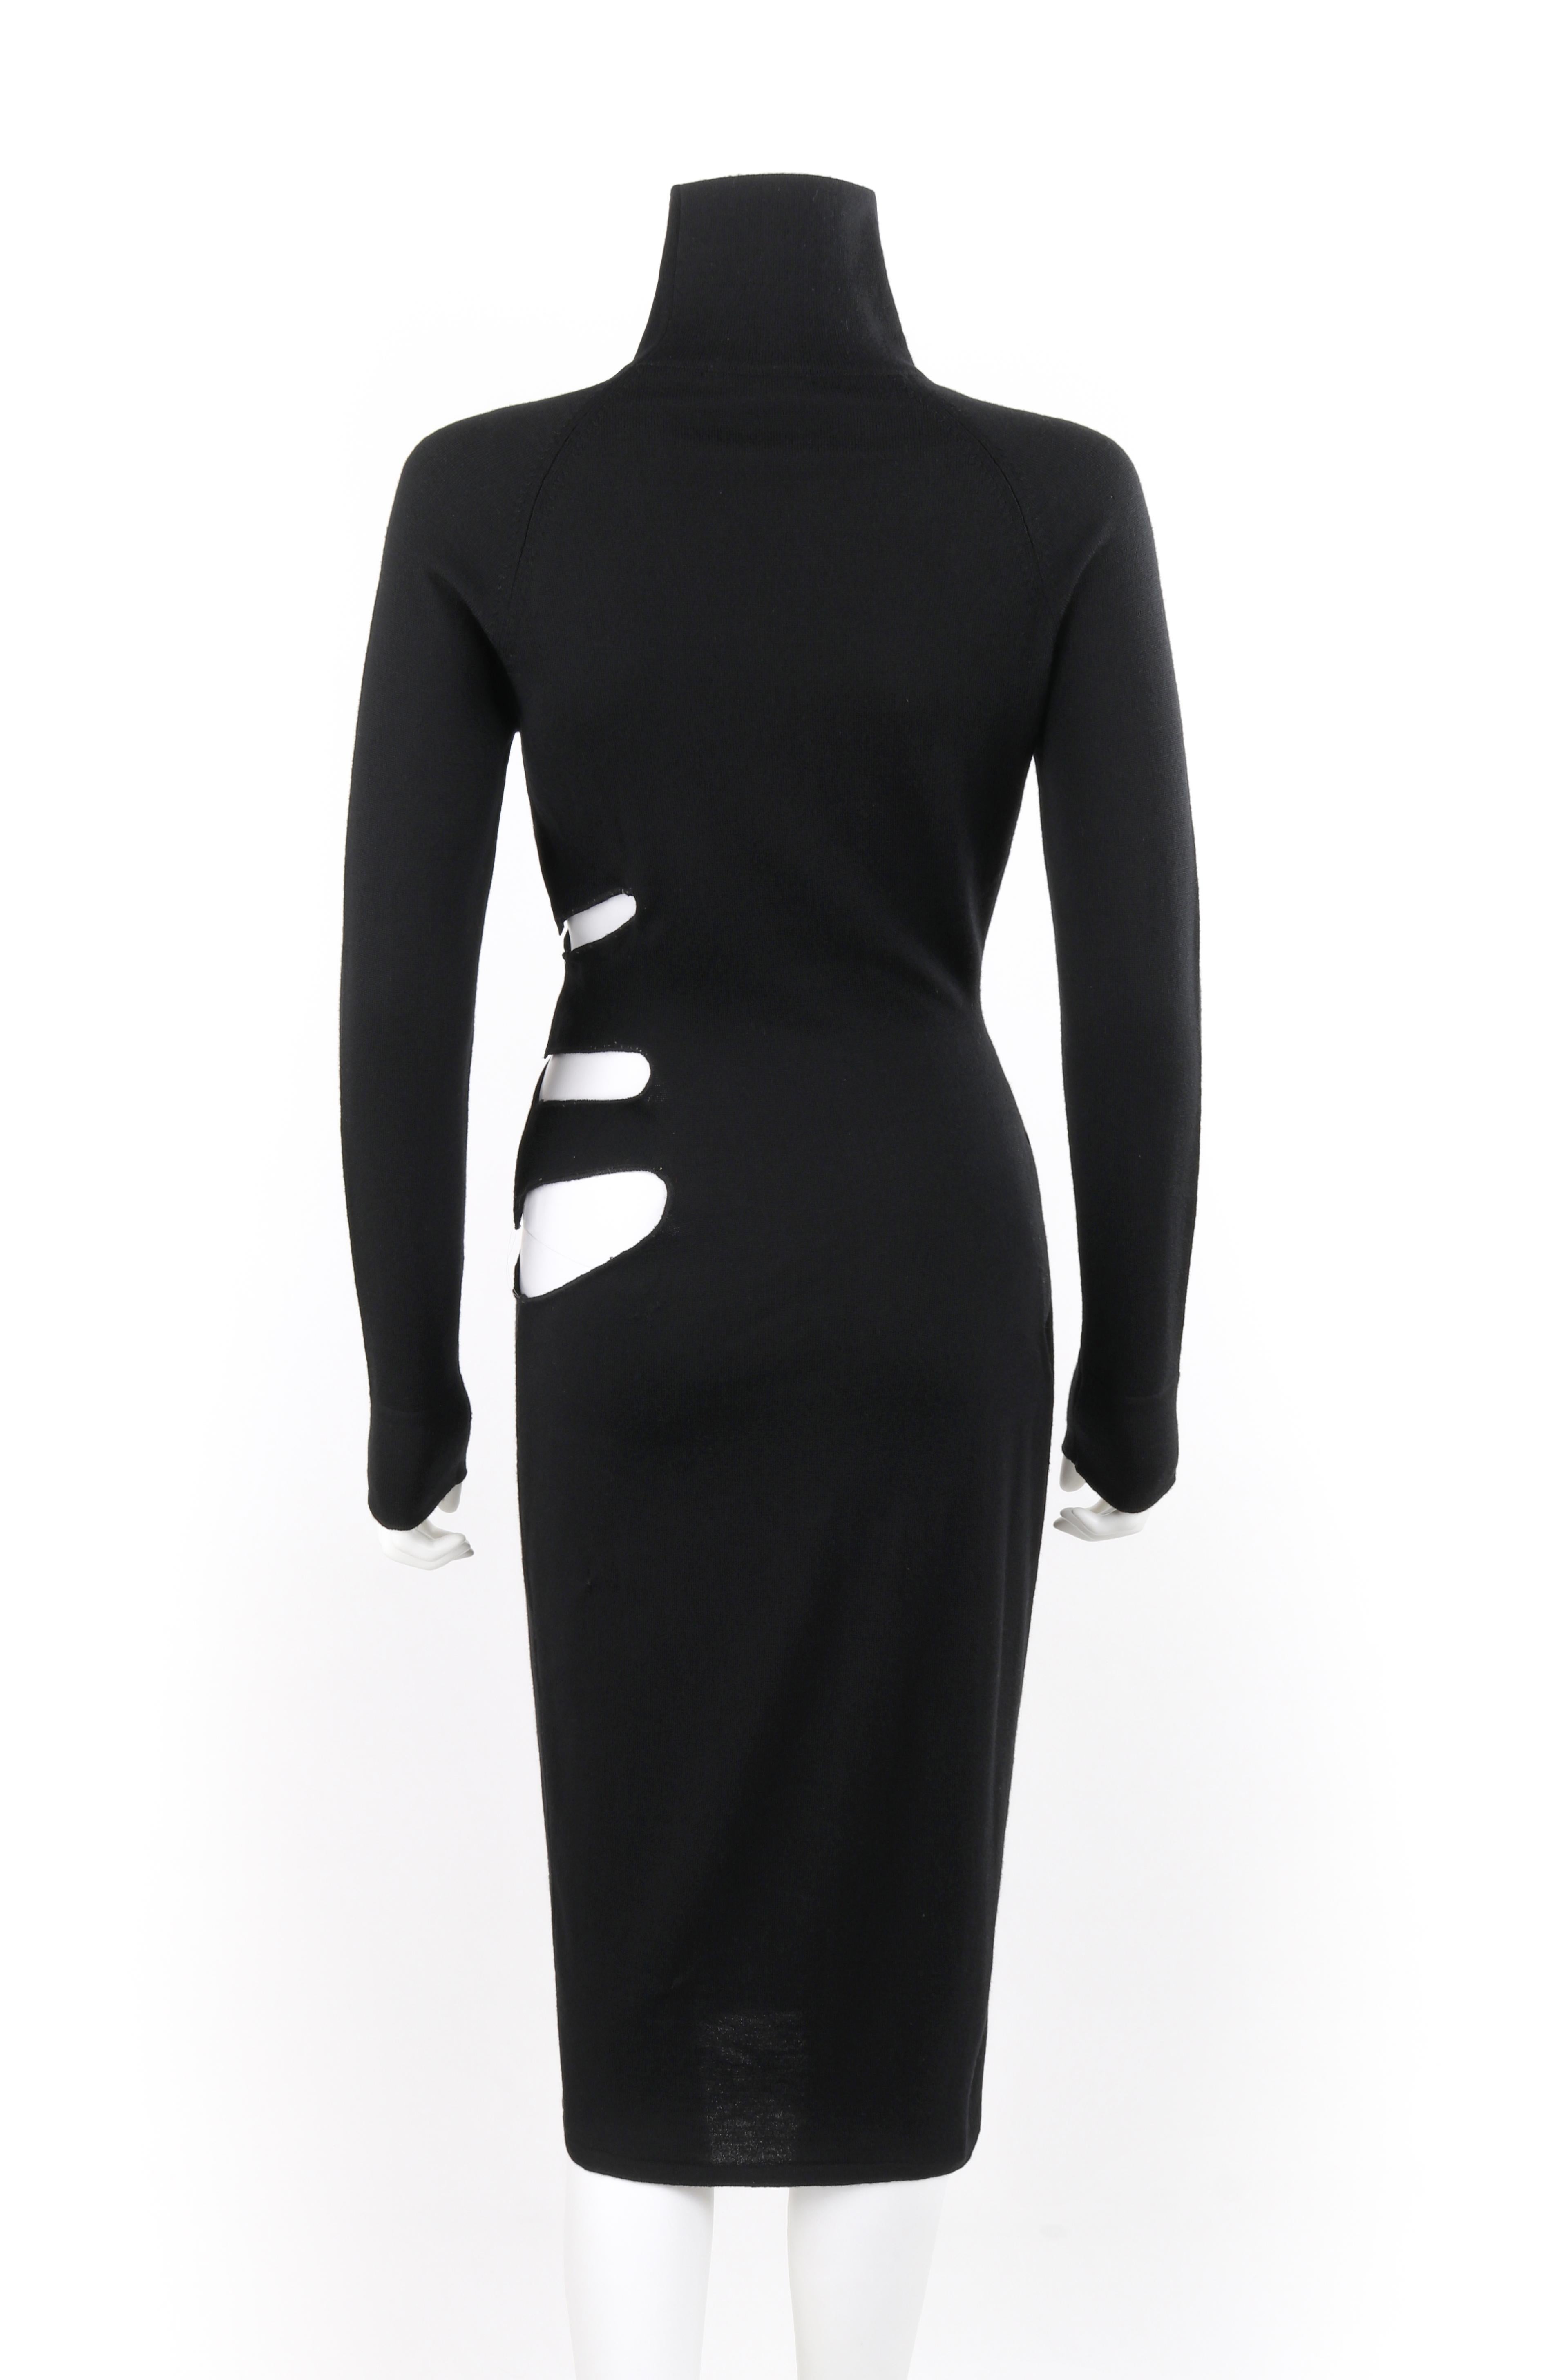 ALEXANDER McQUEEN S/S 1997 “La Poupée” Black Wool Illusion Cutout Cocktail Dress For Sale 1